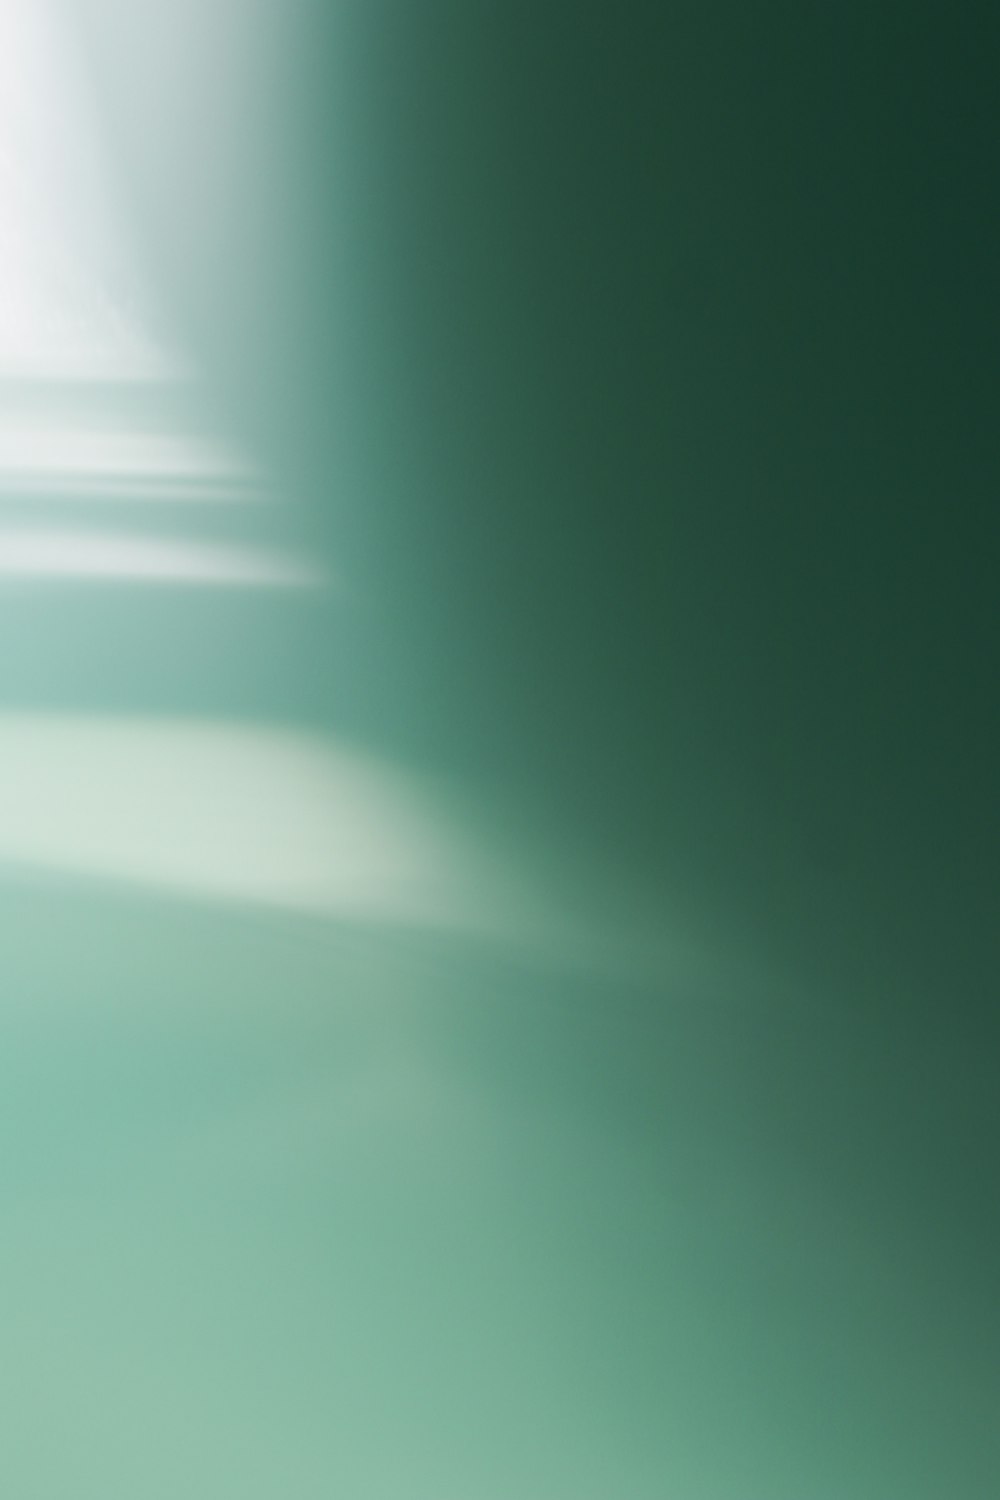 Green Wallpapers: Free HD Download [500+ HQ] | Unsplash